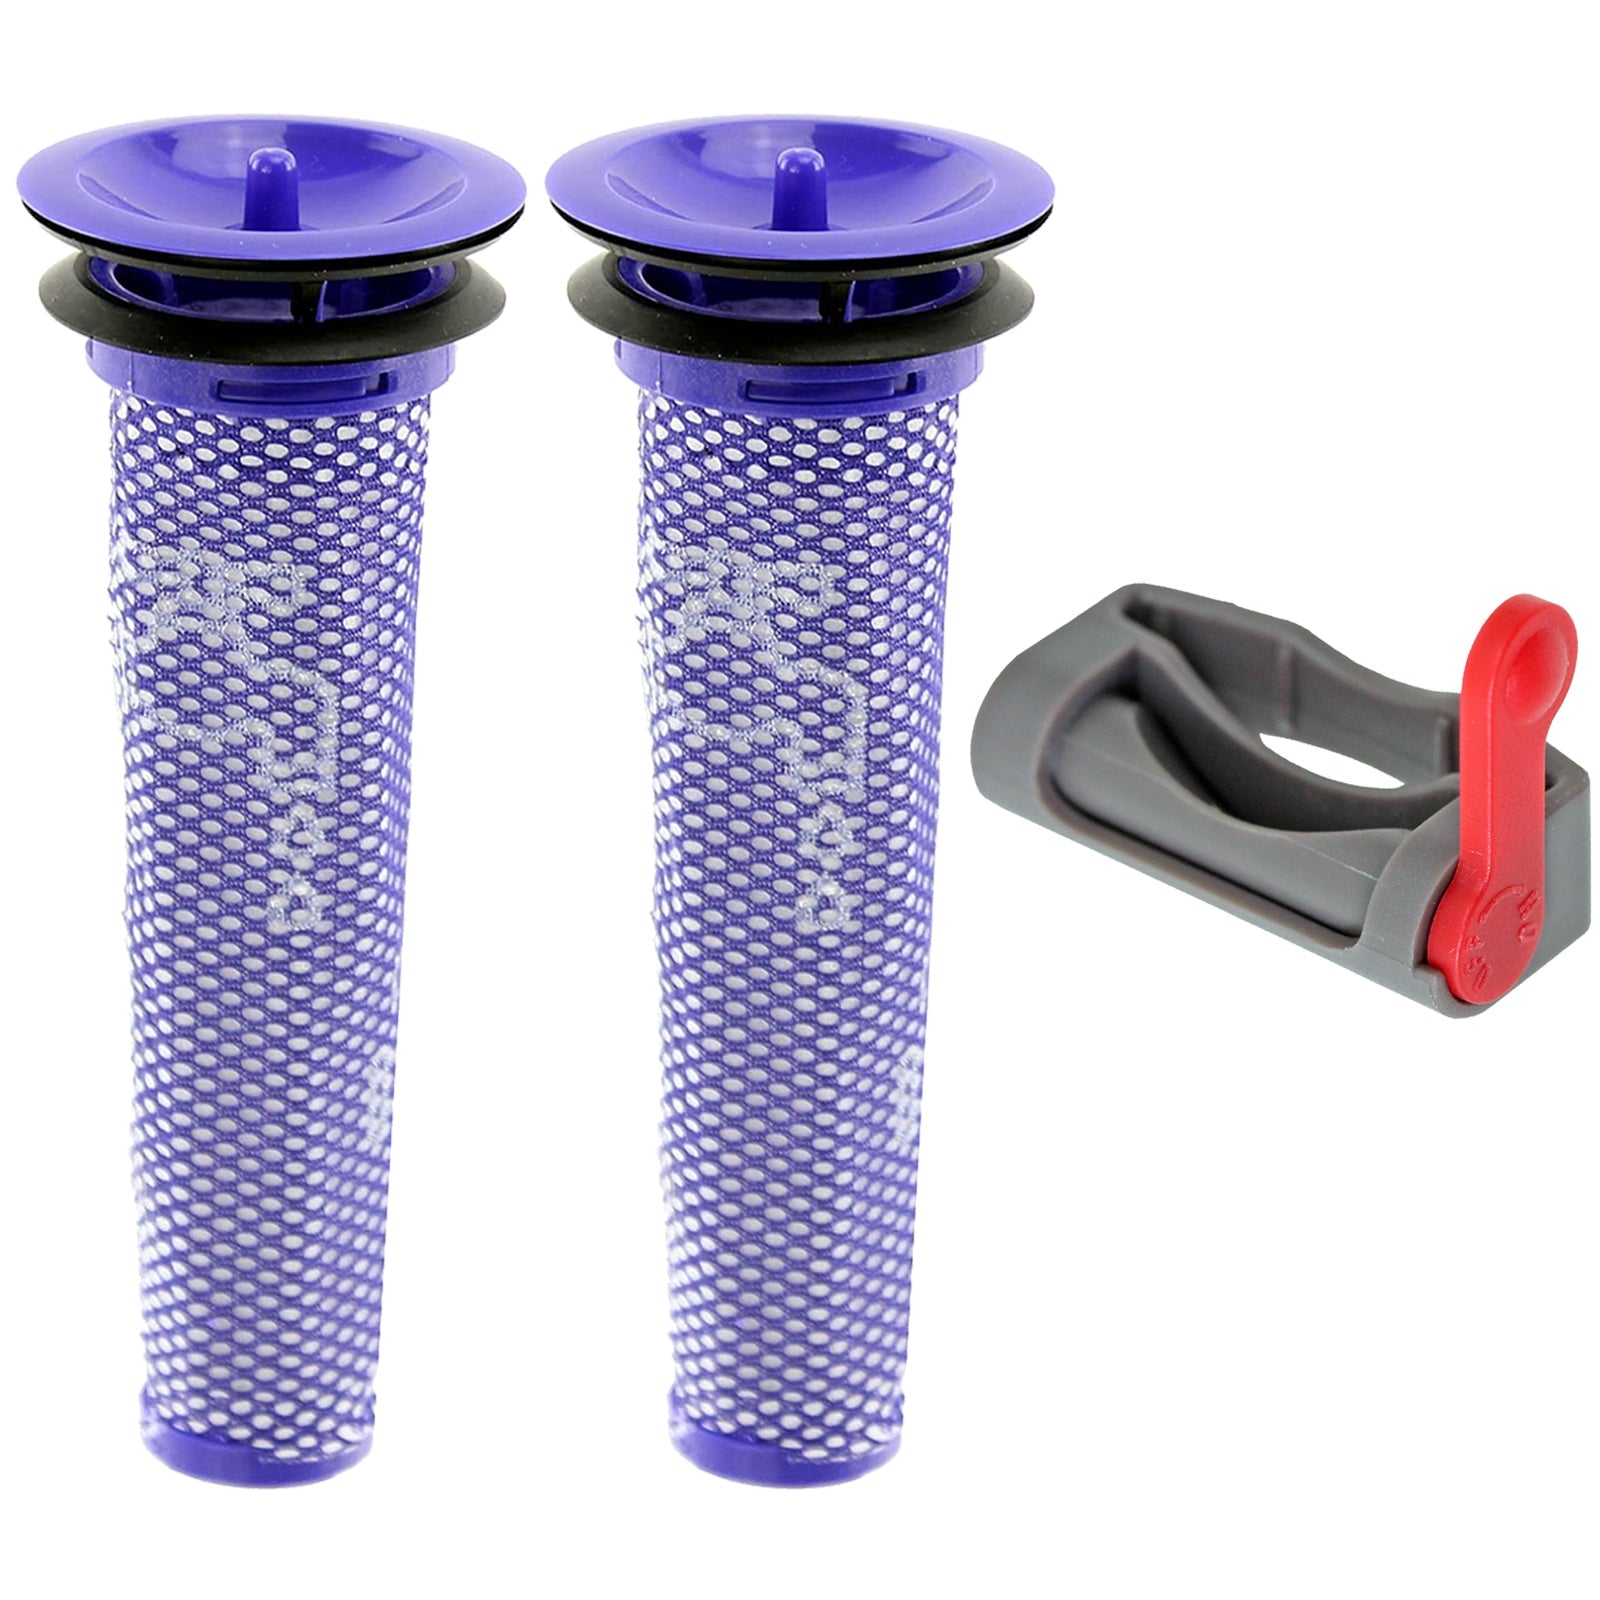 Washable Pre-Motor Stick Filter + Trigger Lock for Dyson V6 V7 V8 Vacuum Cleaner (Pack of 2 Filters)